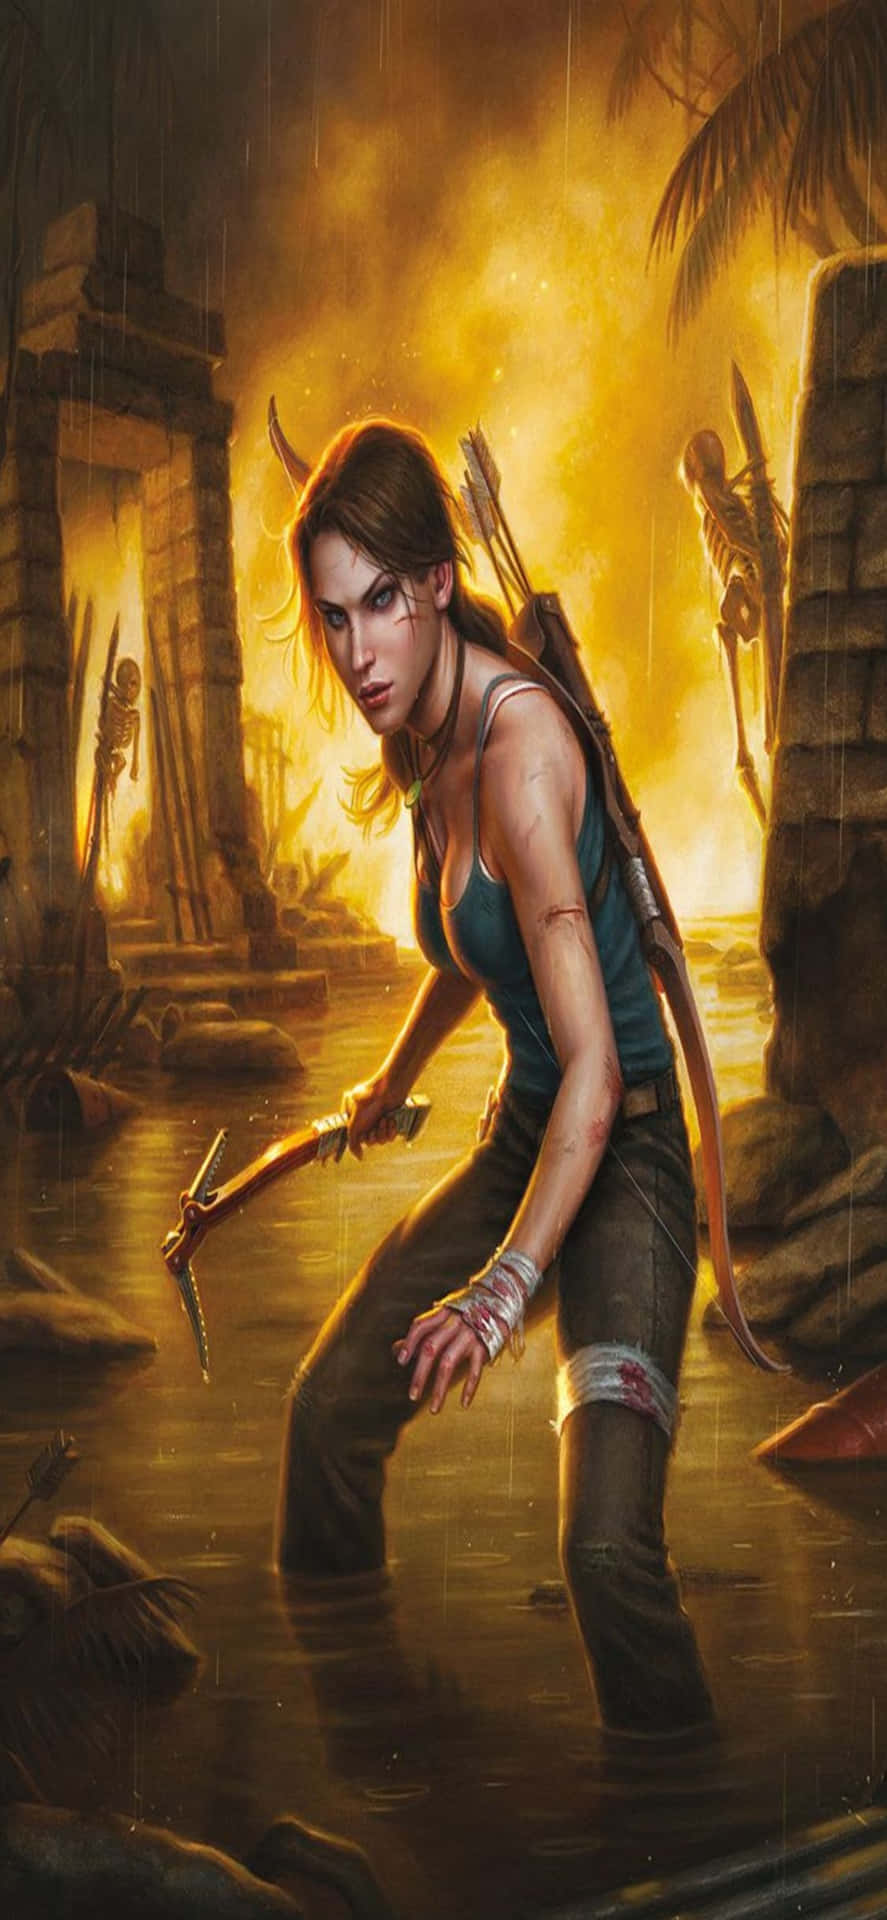 Explorael Emocionante Mundo De Rise Of The Tomb Raider En El Iphone X